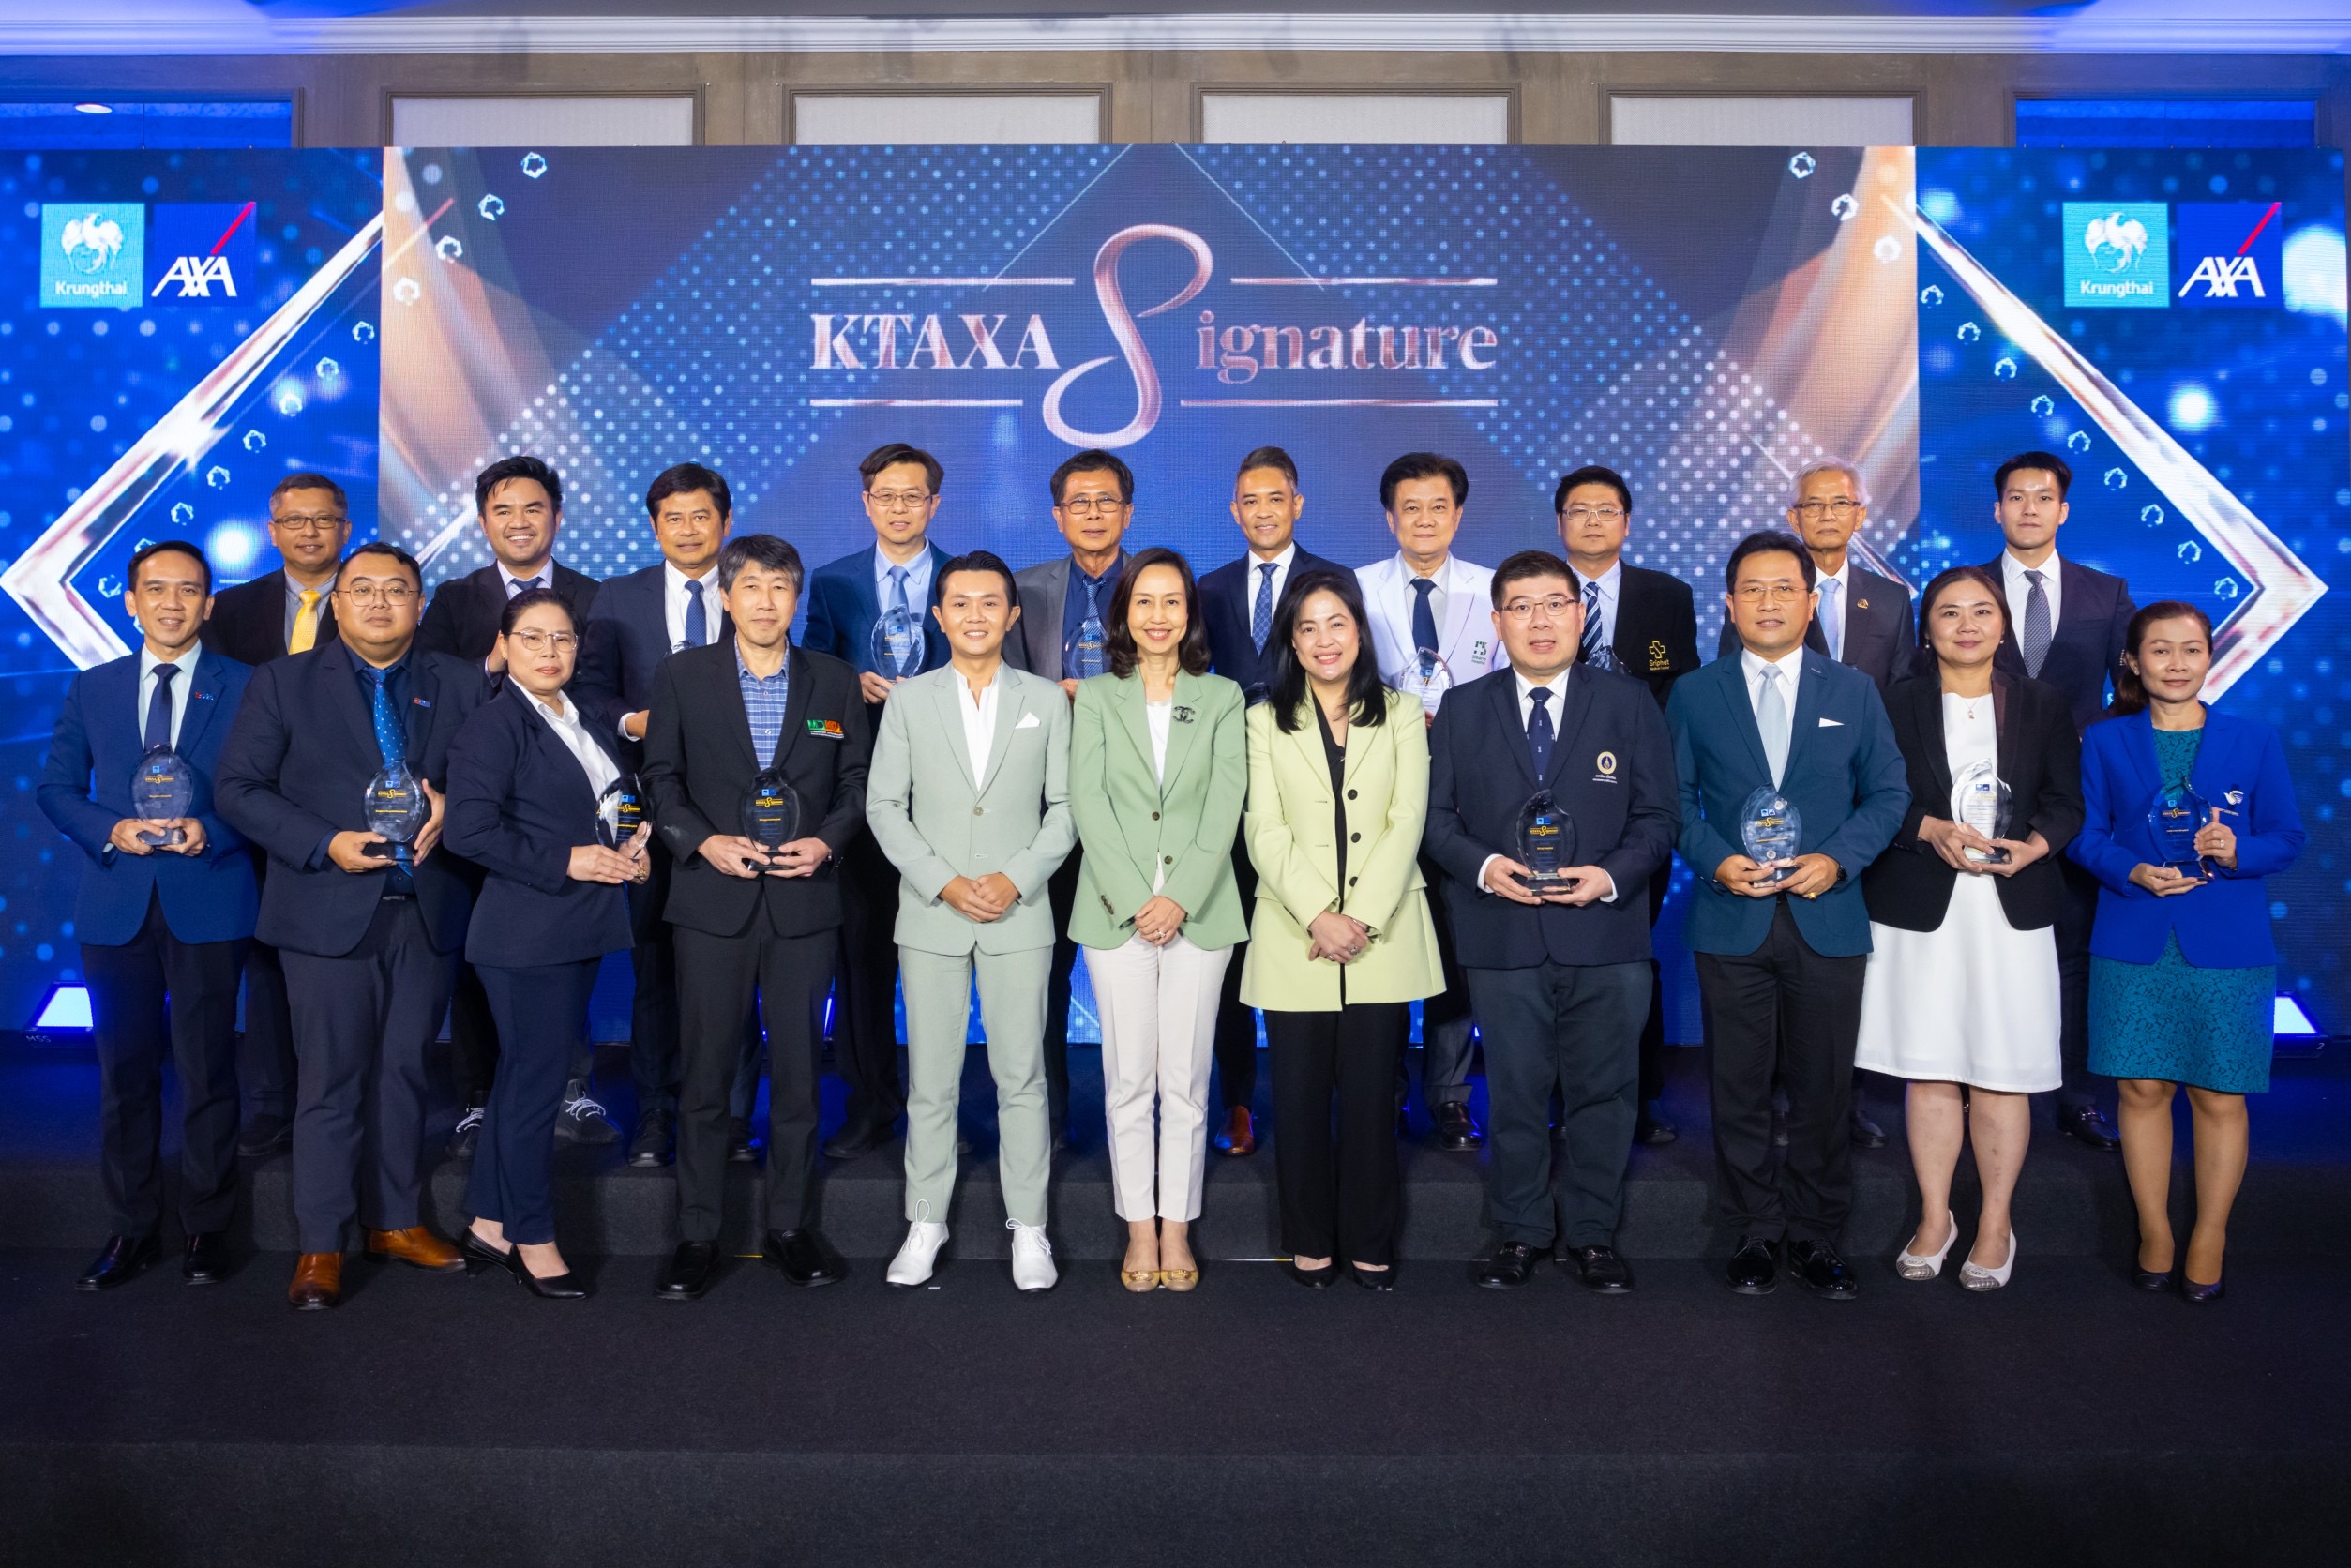 กรุงไทย-แอกซ่า ประกันชีวิต จัดงาน “KTAXA Signature Hospital Awards 2023” เพื่อเชิดชูเกียรติพันธมิตรโรงพยาบาลคู่สัญญา ย้ำการให้บริการที่ดีที่สุดแก่ลูกค้าคนสำคัญ